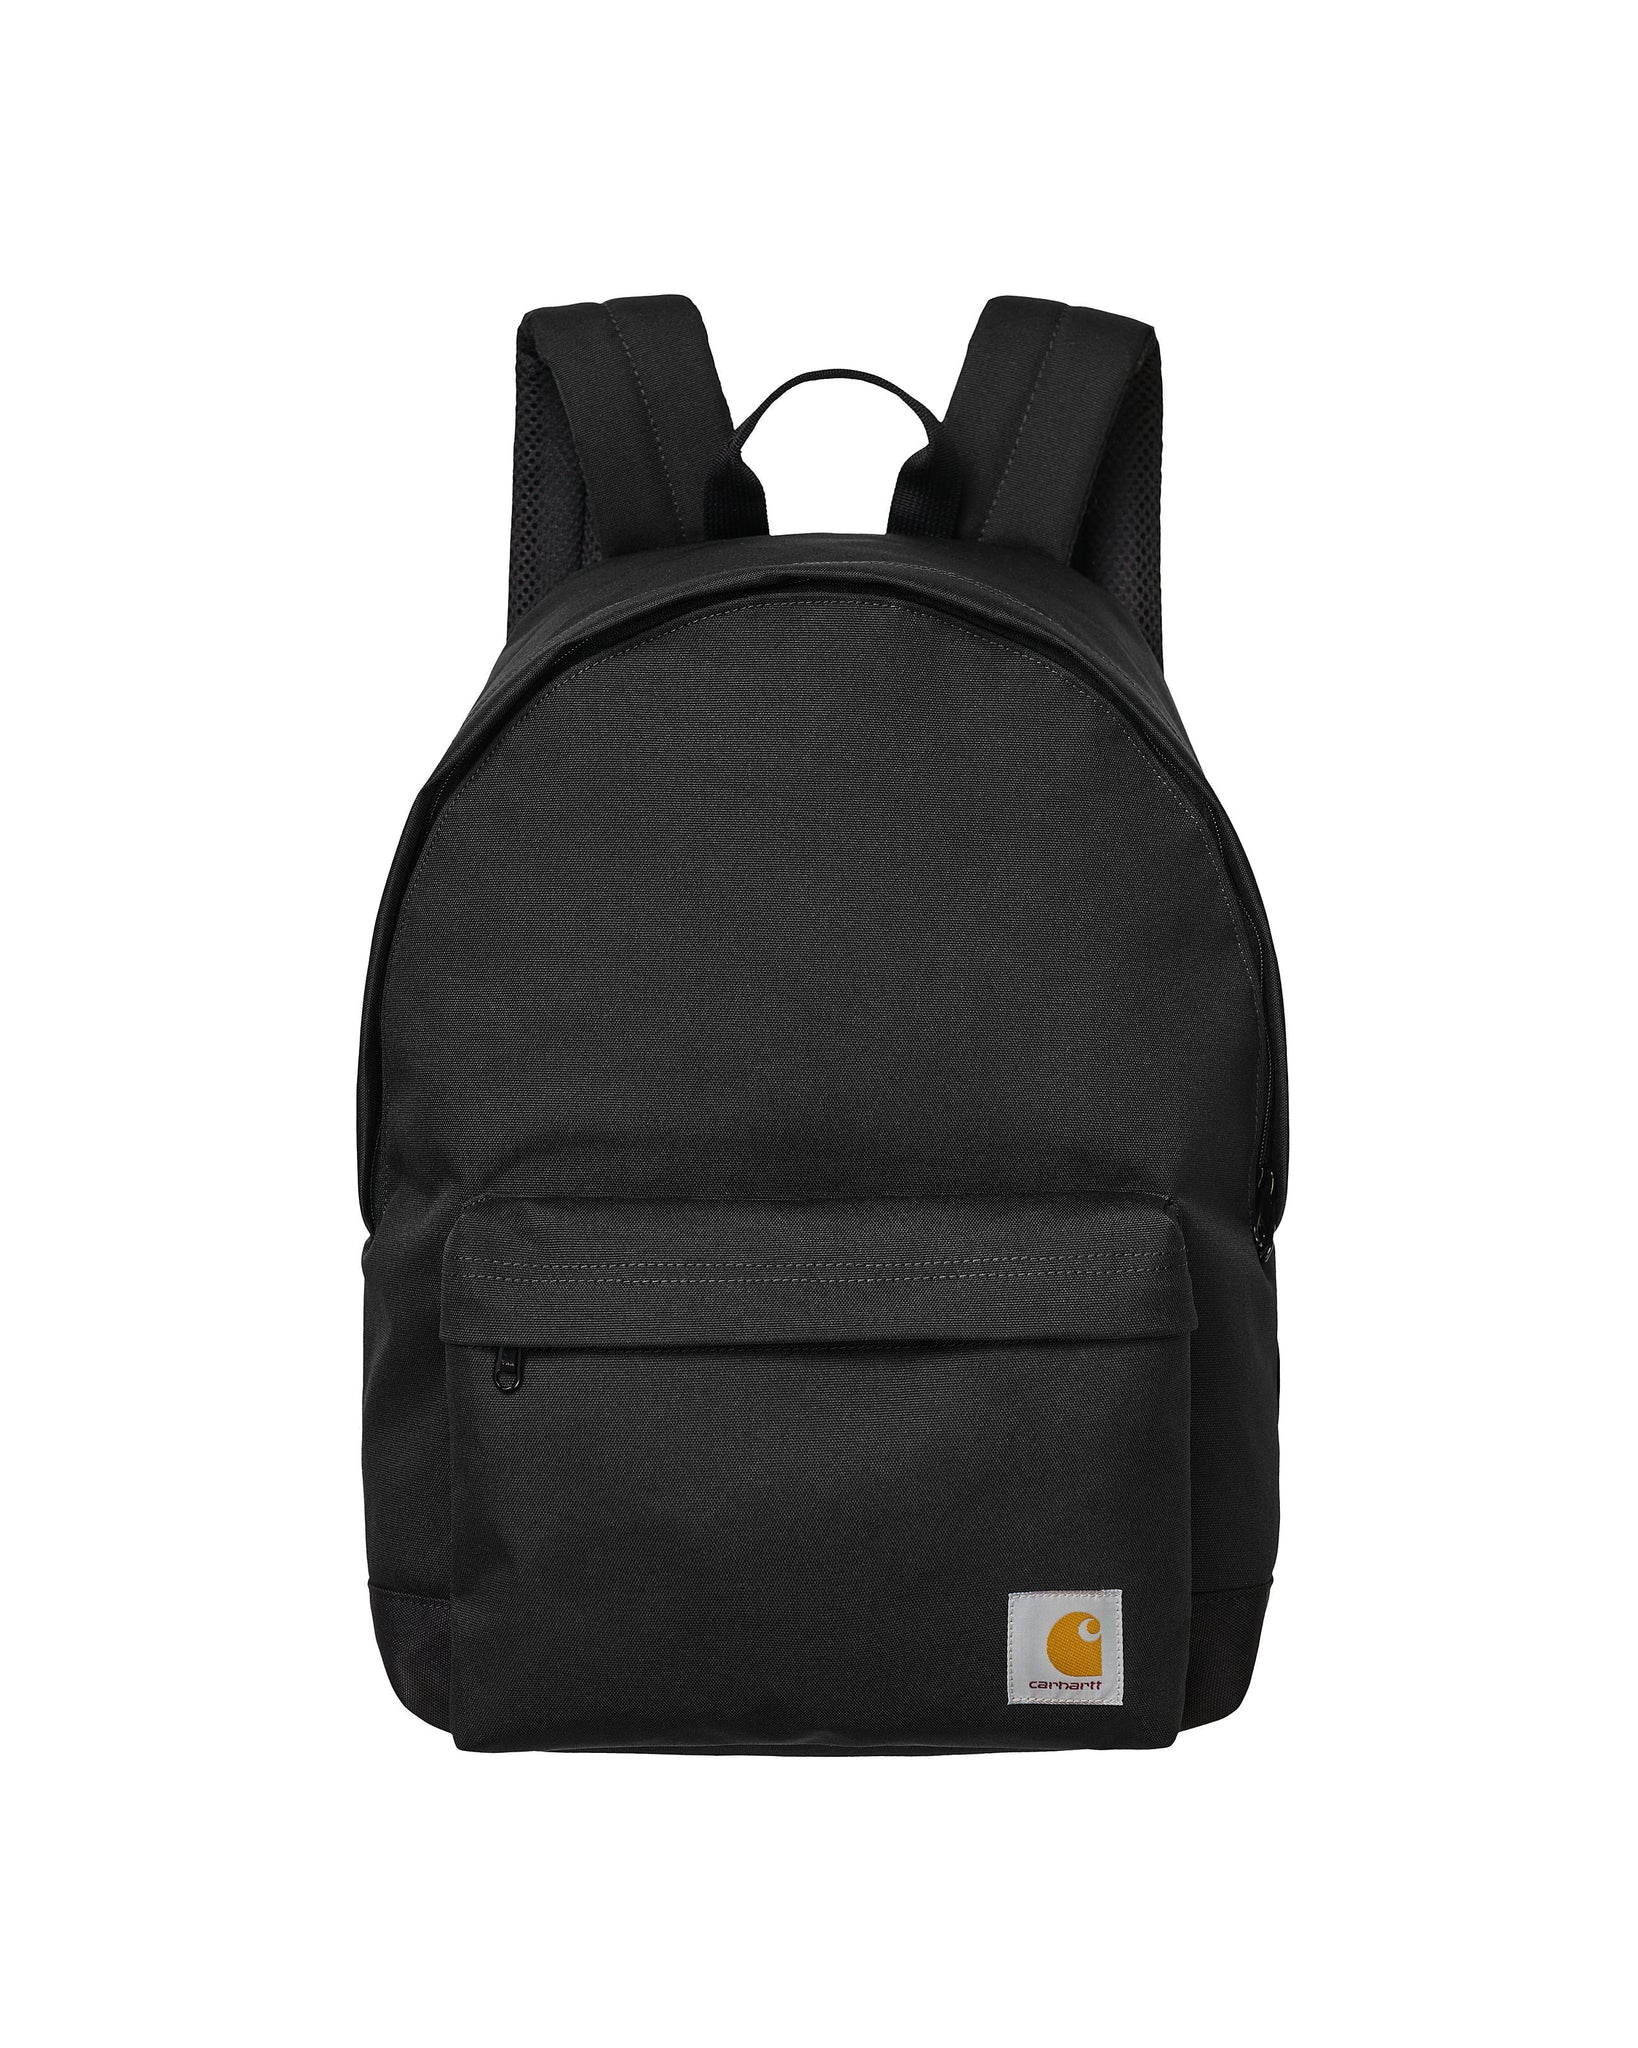 Jake backpack - Black